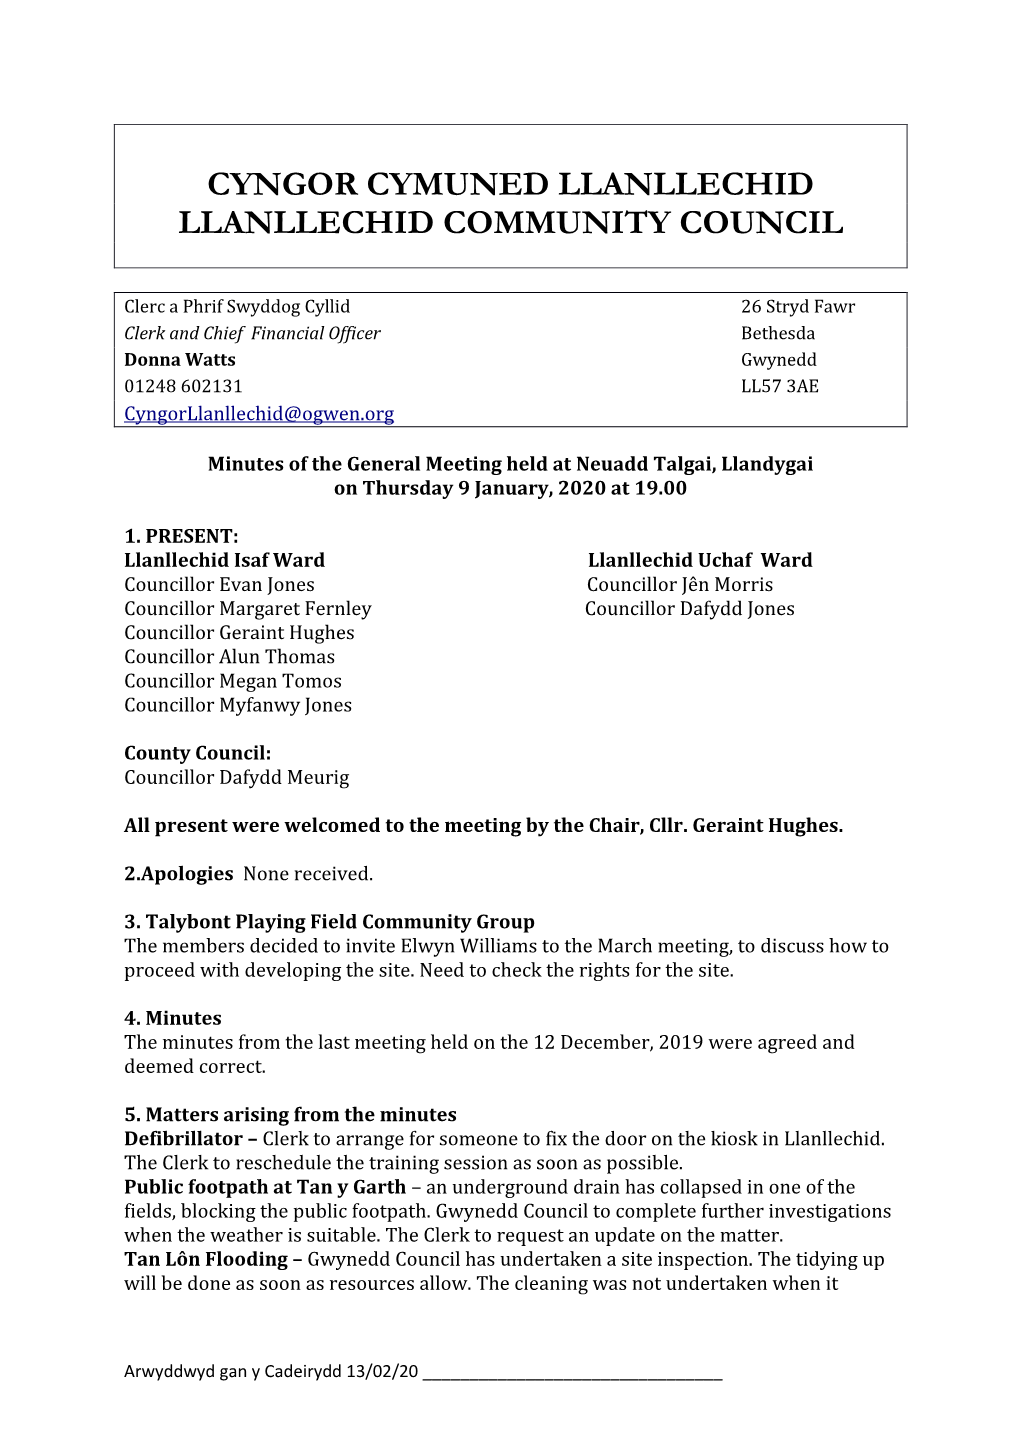 Cyngor Cymuned Llanllechid Llanllechid Community Council